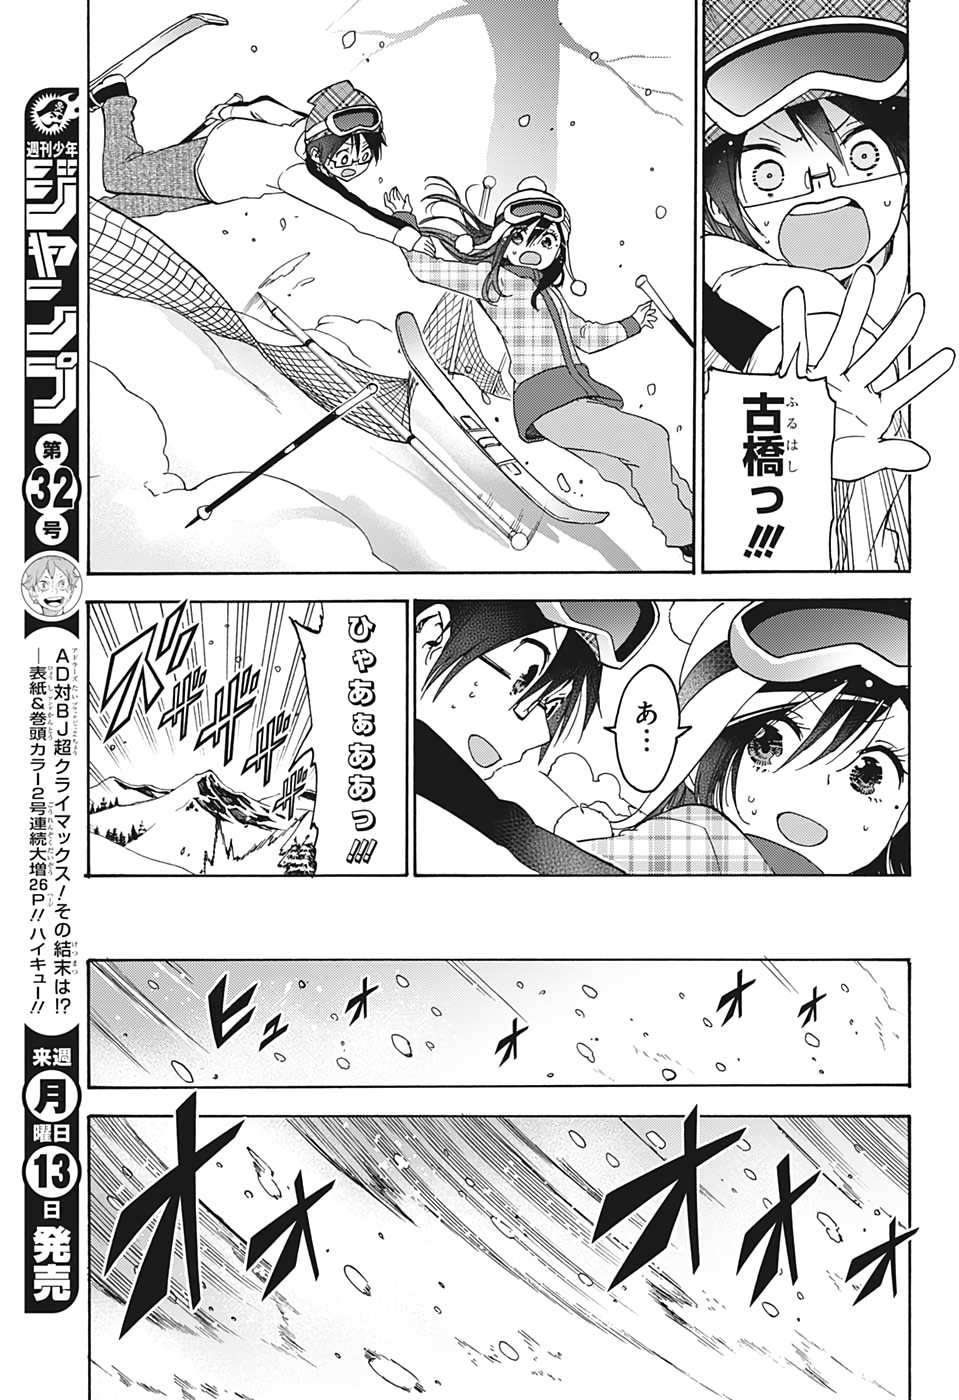 Bokutachi wa Benkyou ga Dekinai - Chapter 165 - Page 7